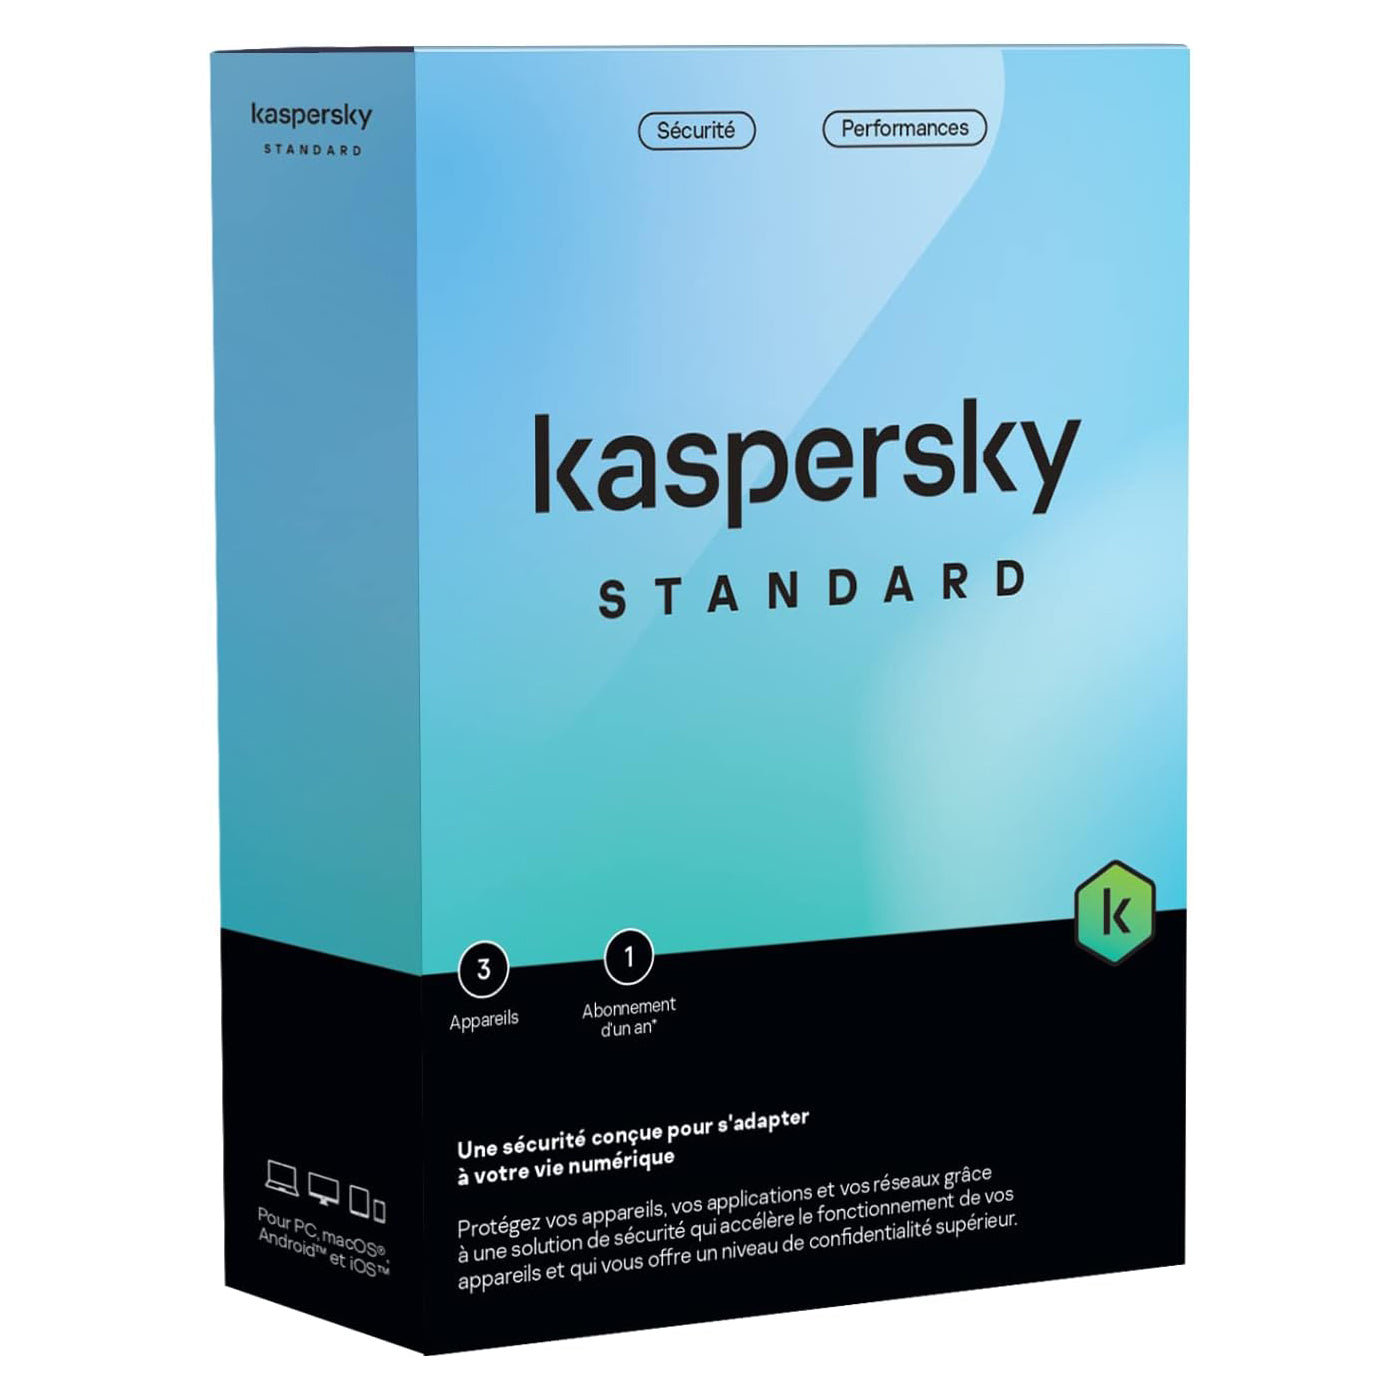 Kaspersky antivirus - Standard - License 3 Appareils / 1 an